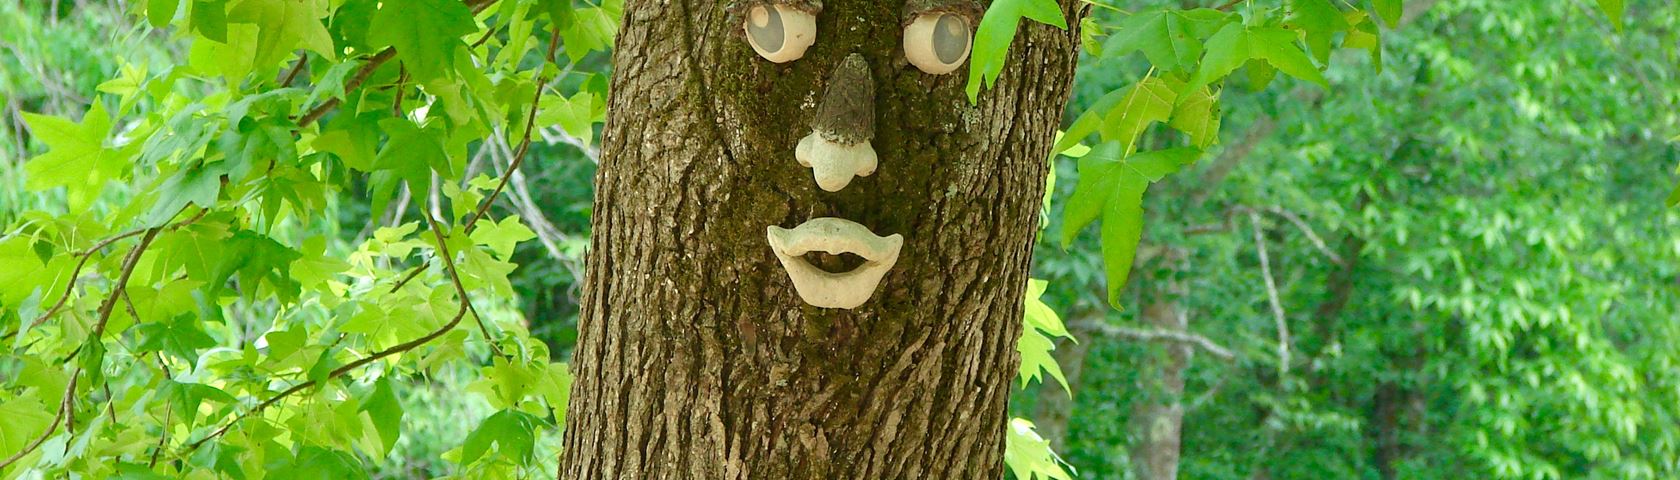 Happy Face Tree